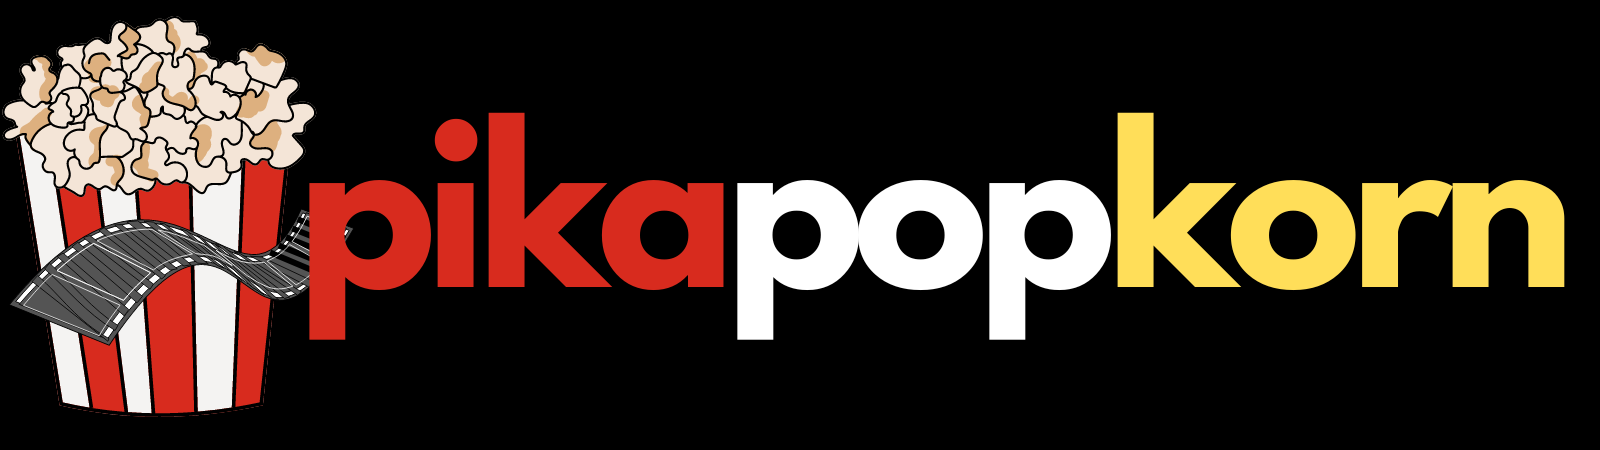 PikaPopkorn - Movies Links Free